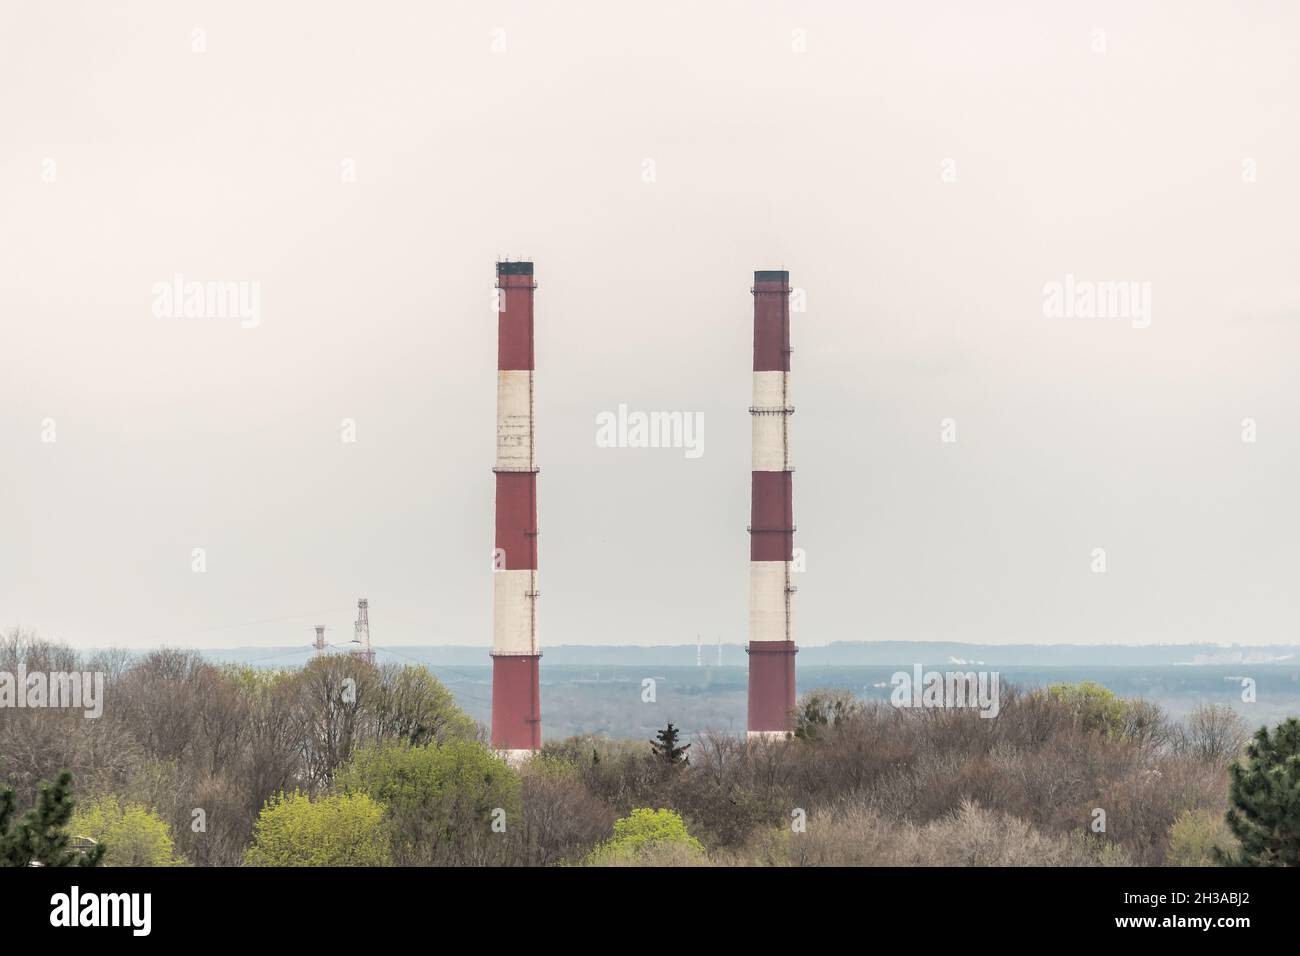 Deux cheminées sur fond de ciel.Concept de pollution de l'air de l'industrie. Banque D'Images